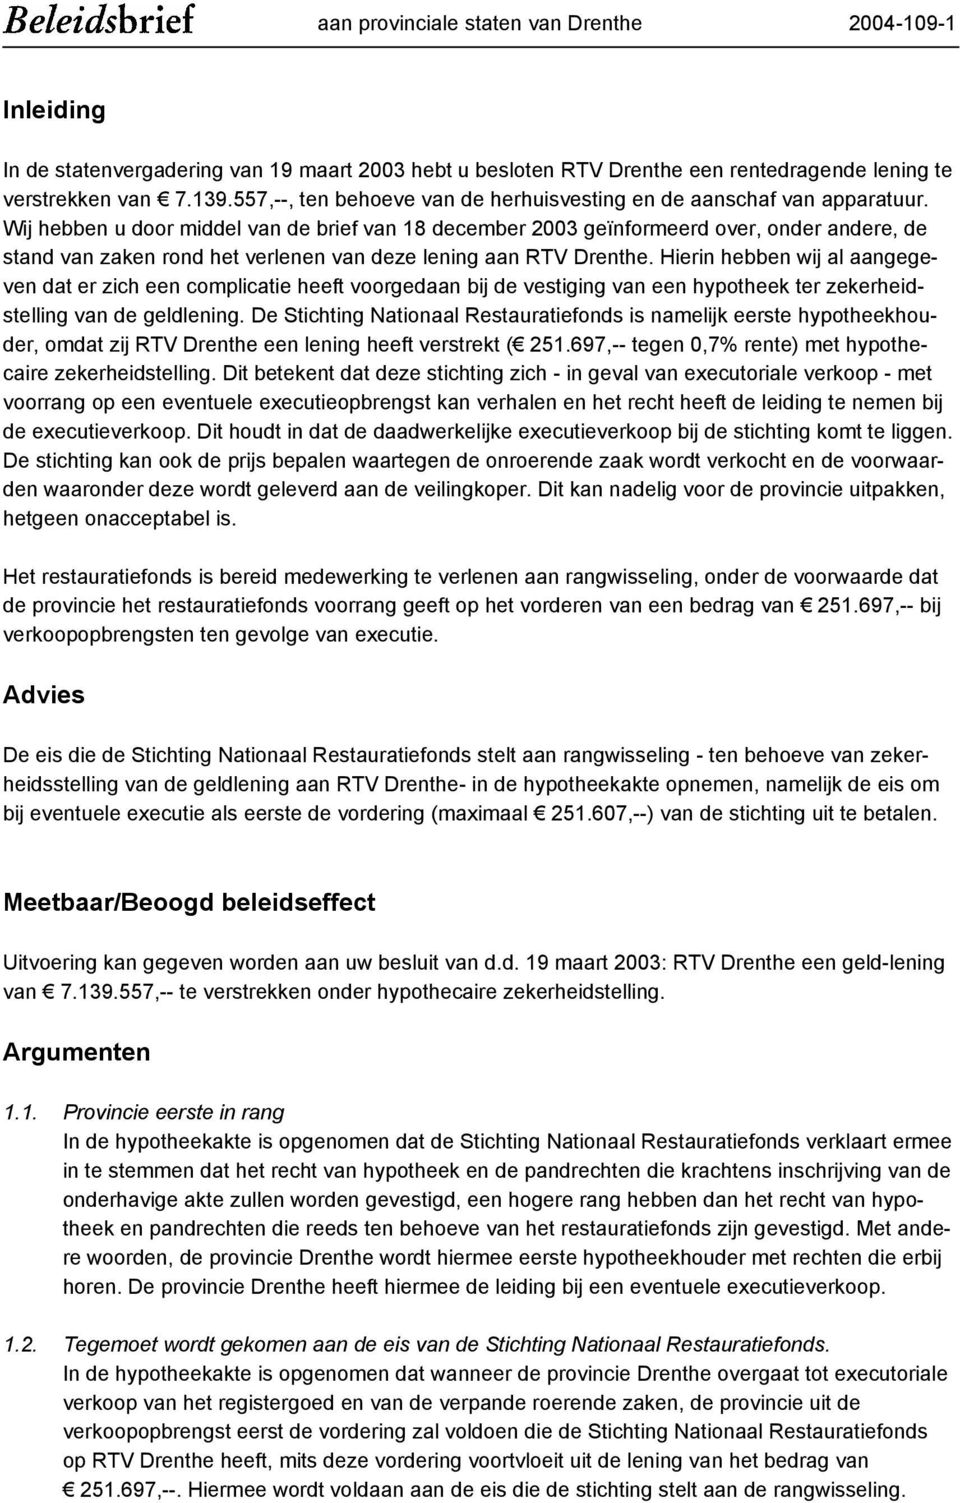 Wij hebben u door middel van de brief van 18 december 2003 geïnformeerd over, onder andere, de stand van zaken rond het verlenen van deze lening aan RTV Drenthe.